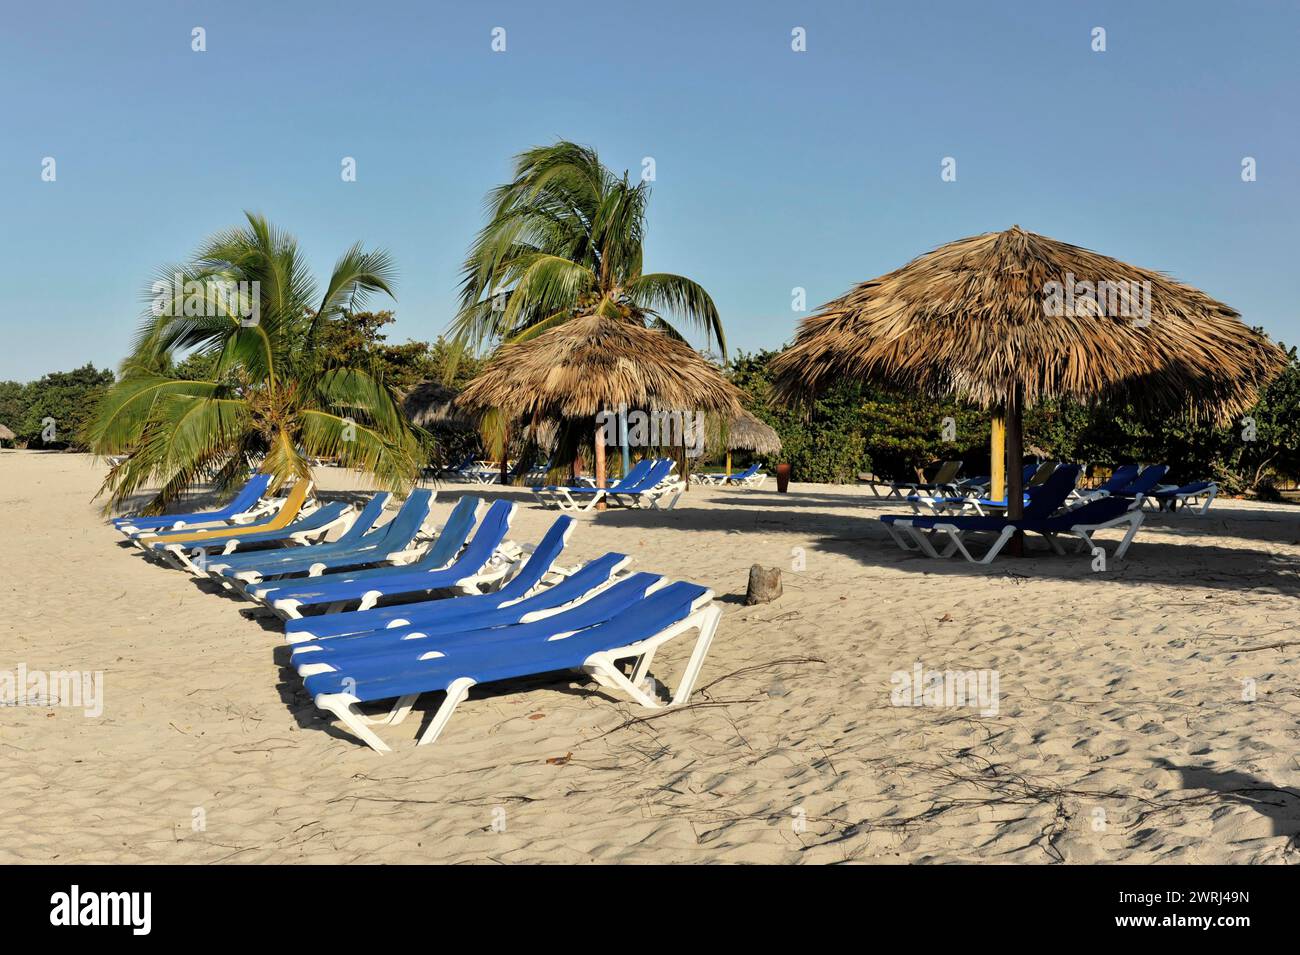 Fila di sdraio vuote sotto ombrelloni su una spiaggia sabbiosa con palme, Trinidad, Cuba, America centrale Foto Stock